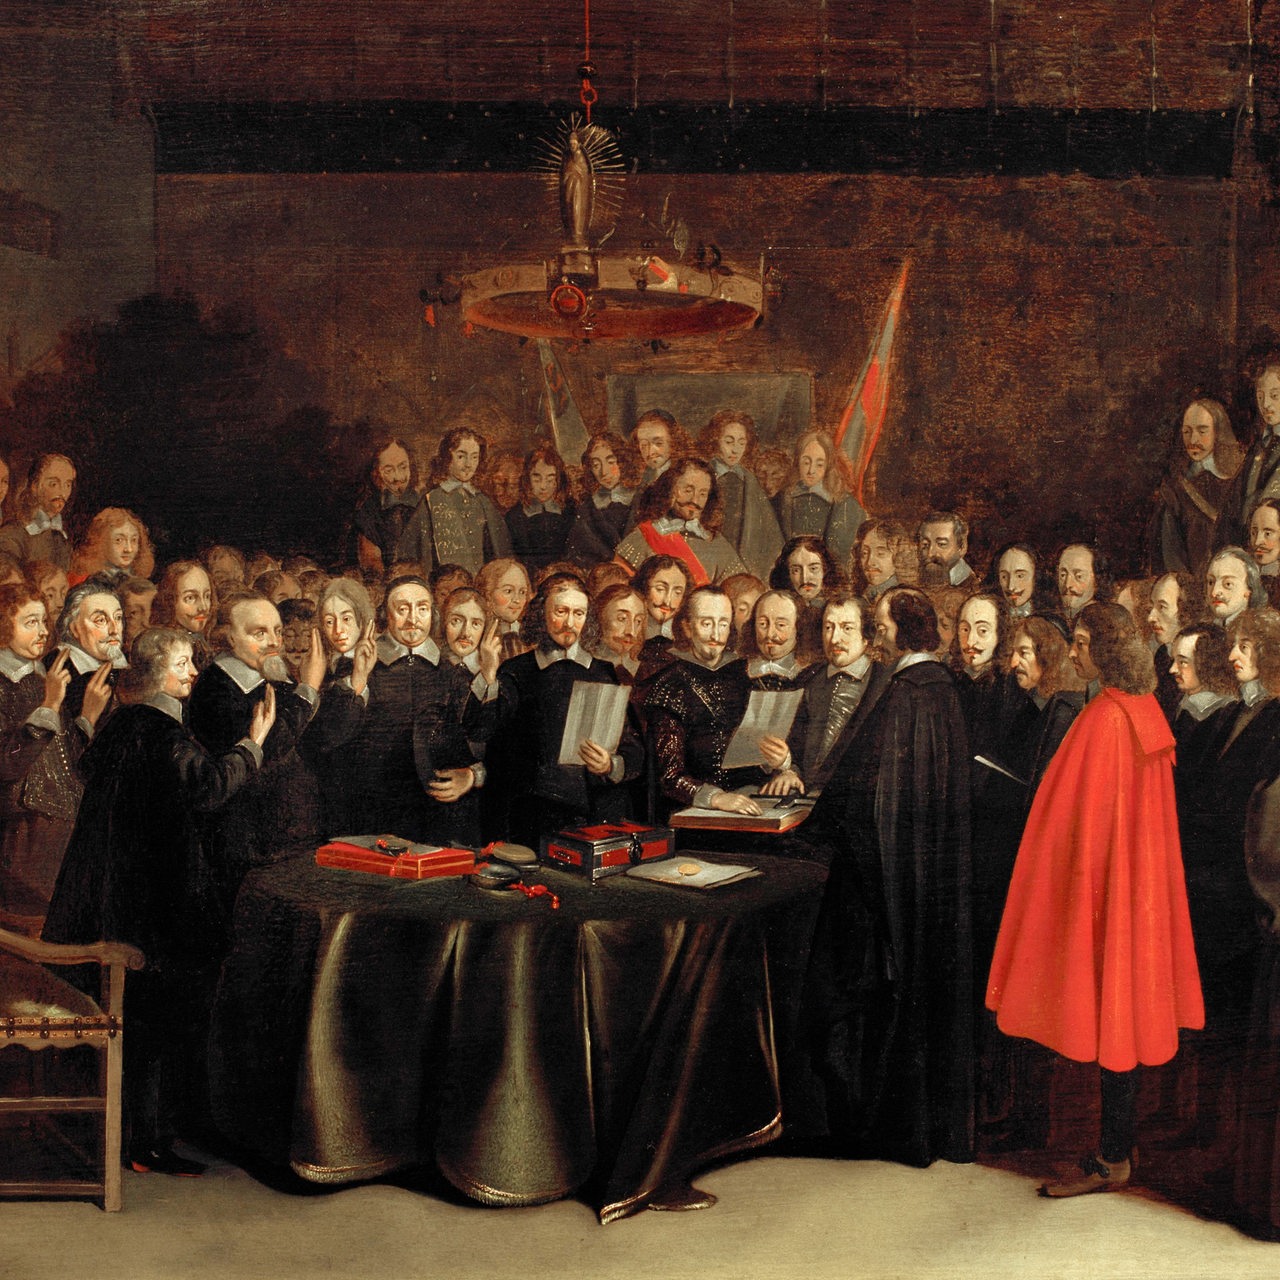 Gemälde: Westfälischer Friede 1648. Der Friedensschwur von Münster am 15. Mai 1648